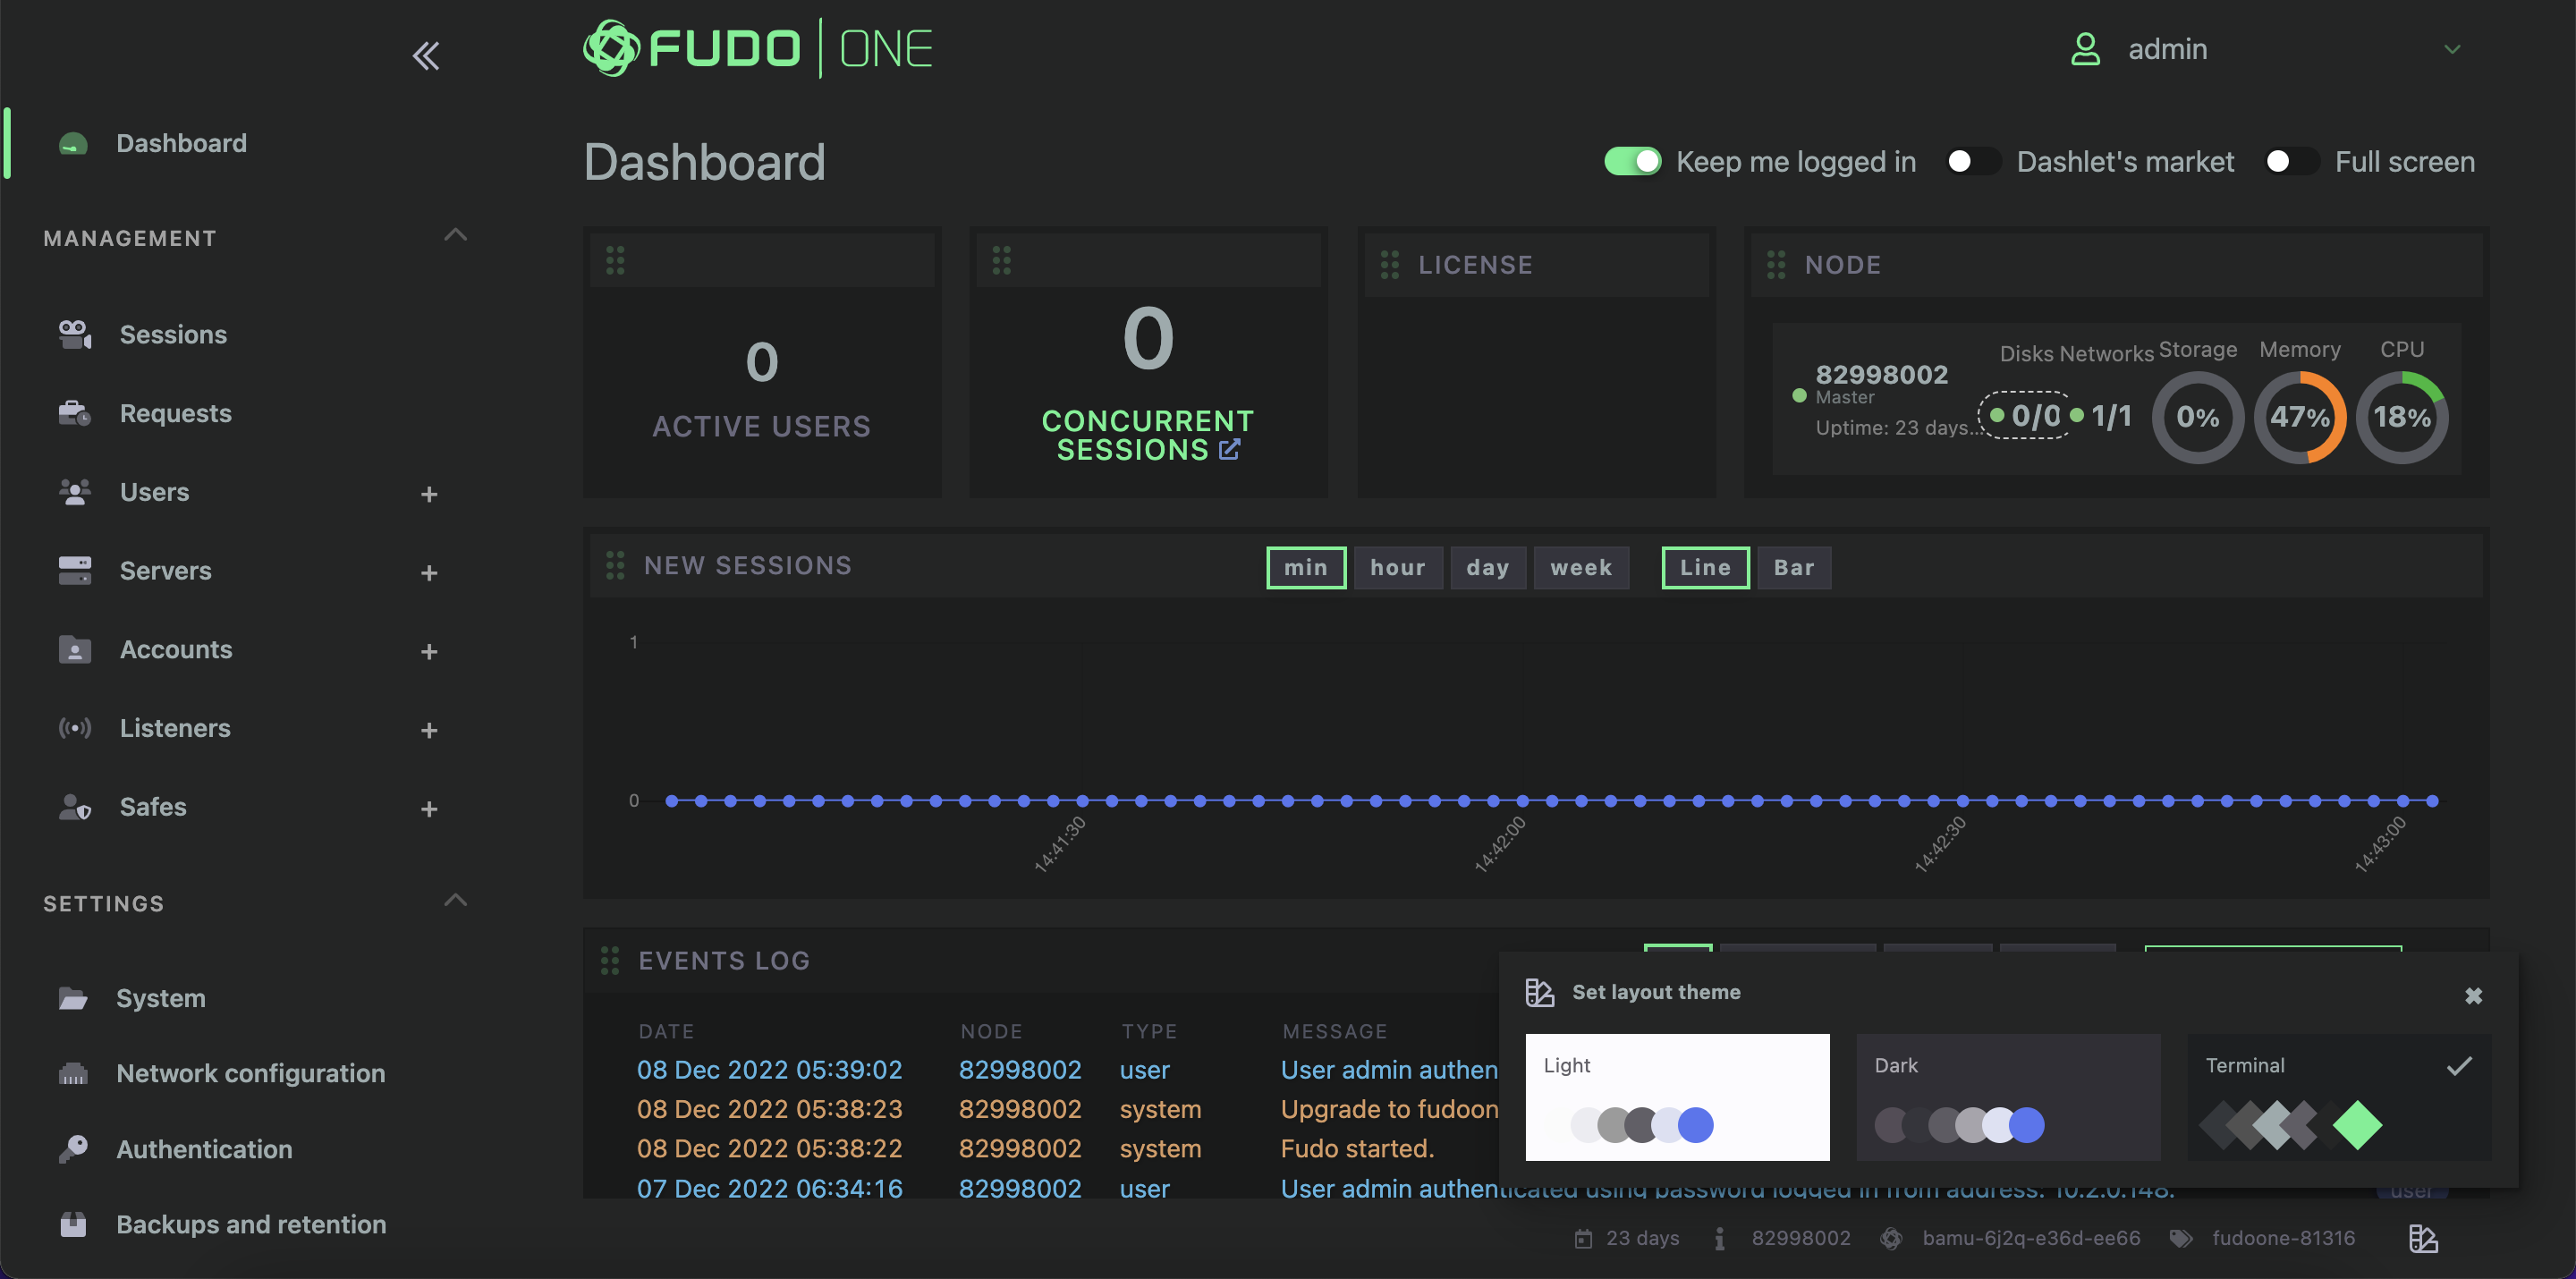 Terminal theme of the Fudo One Admin Panel